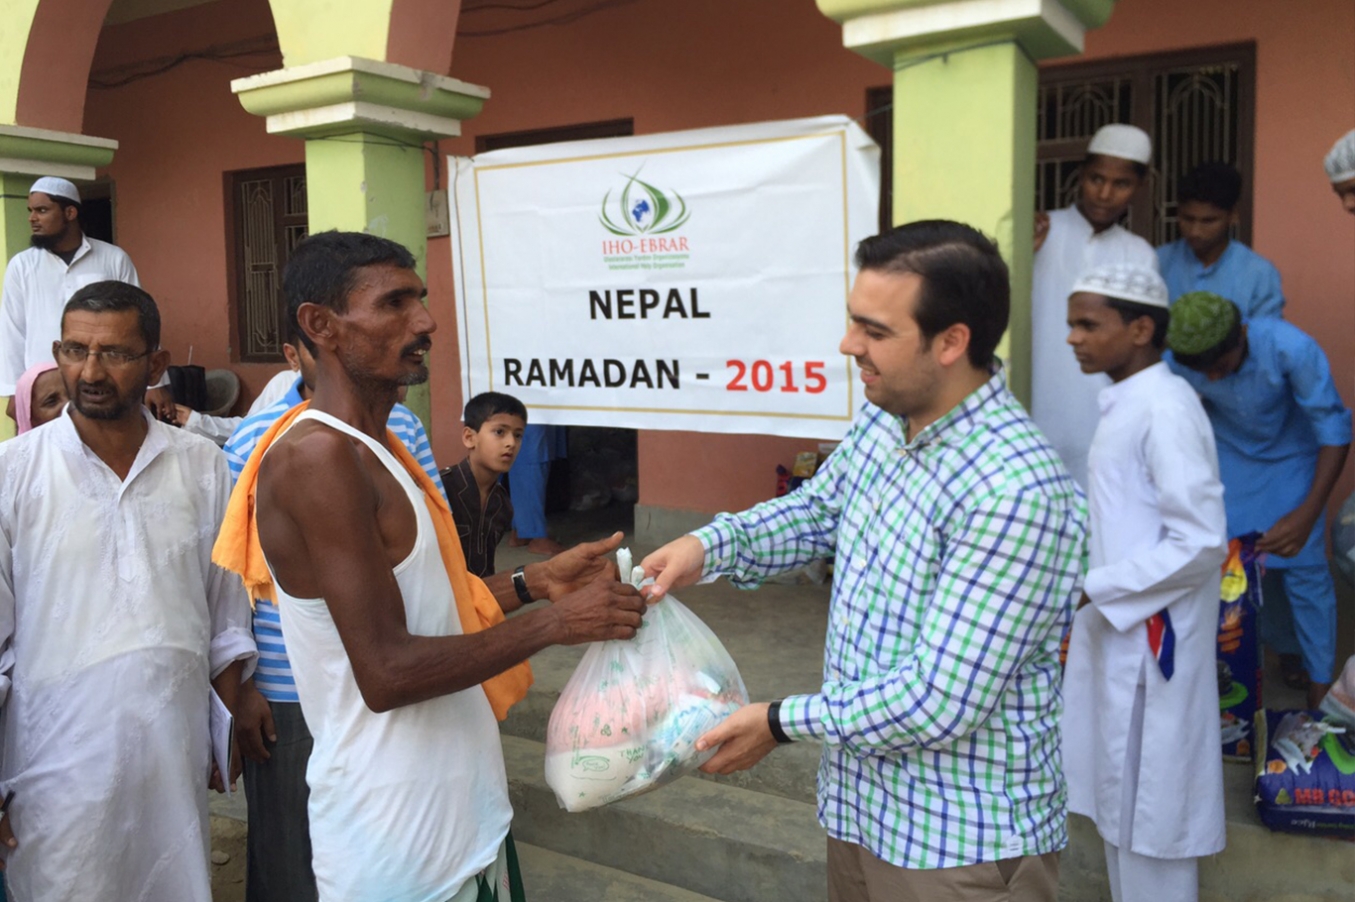 IHO EBRAR’ın yardımları Nepal’e ulaştı